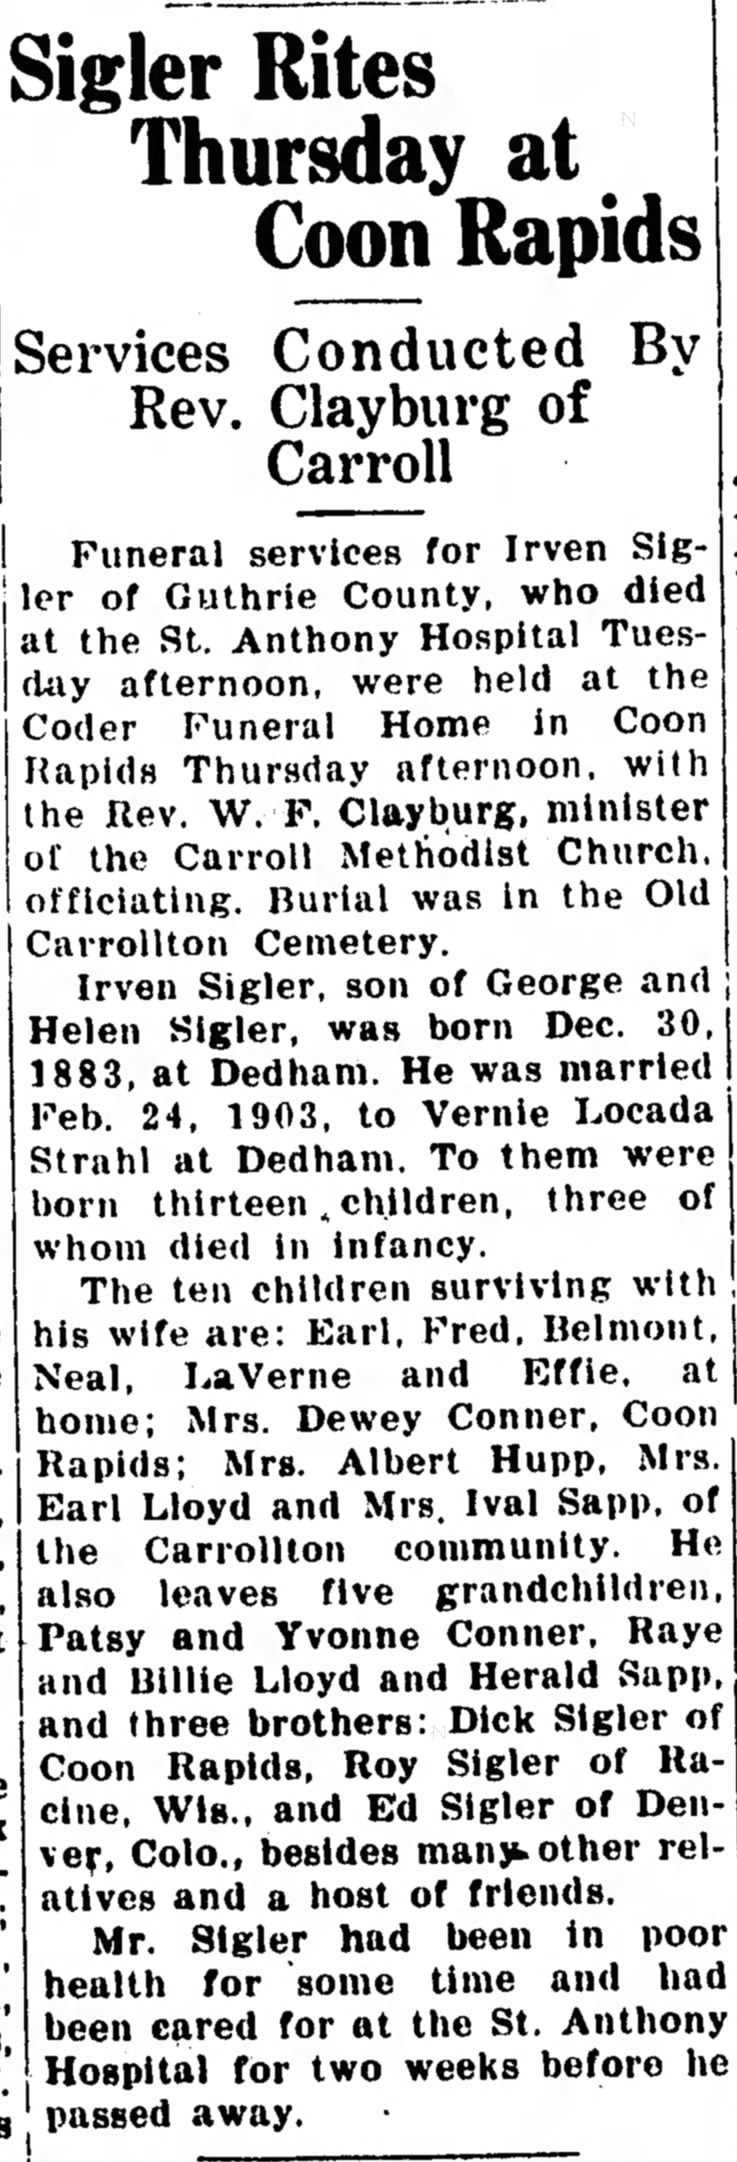 Irven Sigler Obit
Carroll Daily Herald 28 April, 1939